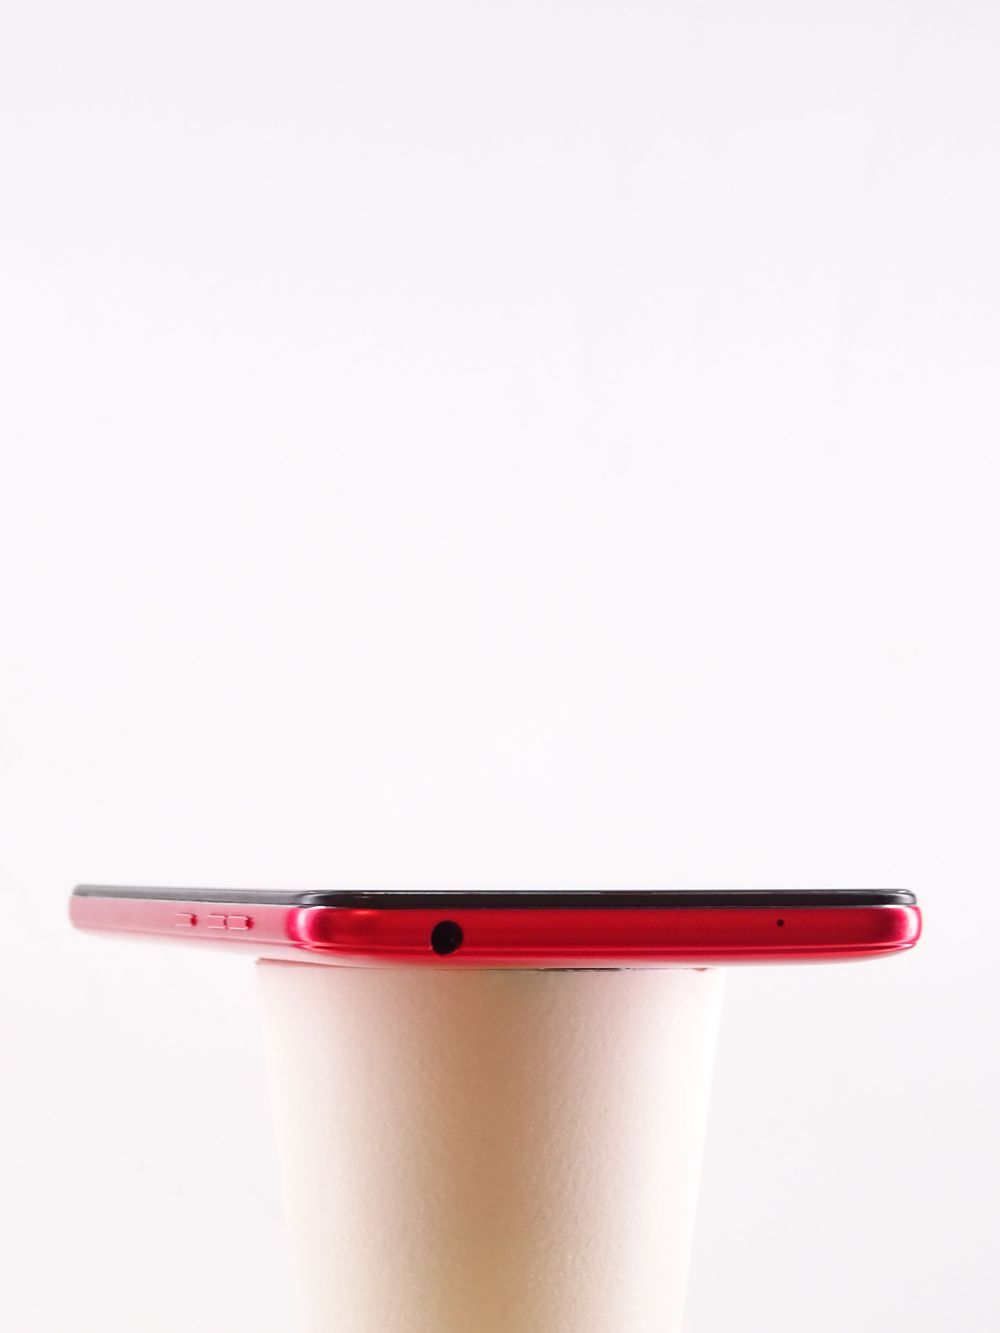 Telefon mobil Xiaomi Poco F1, Rosso Red, 128 GB,  Bun